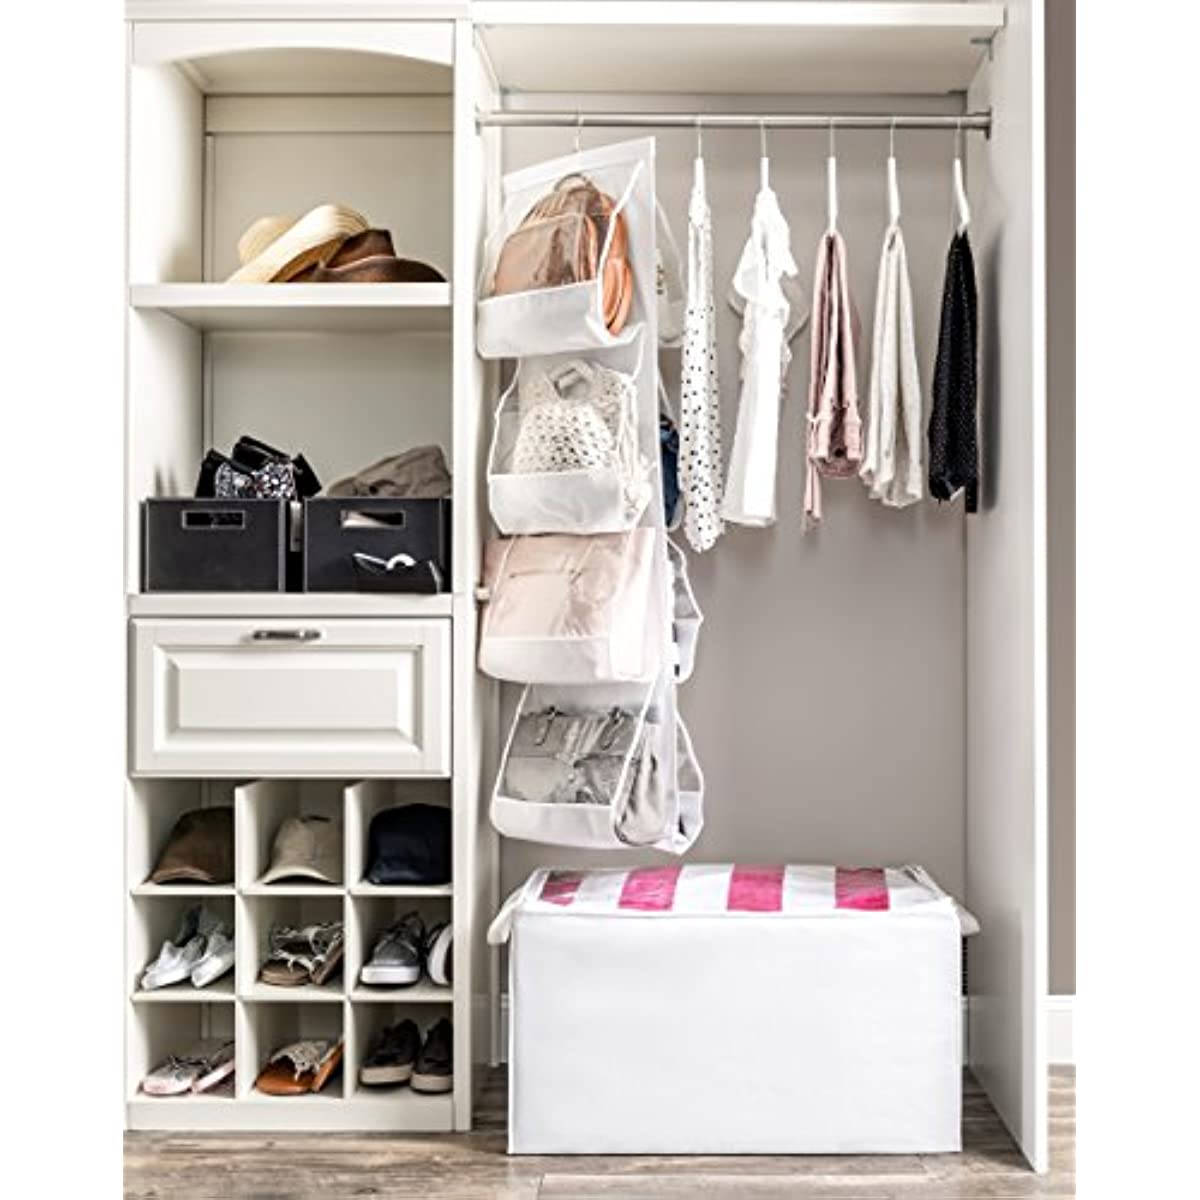 Closet Purse Storage Organizer - Wardrobe Handbag Storage Holder